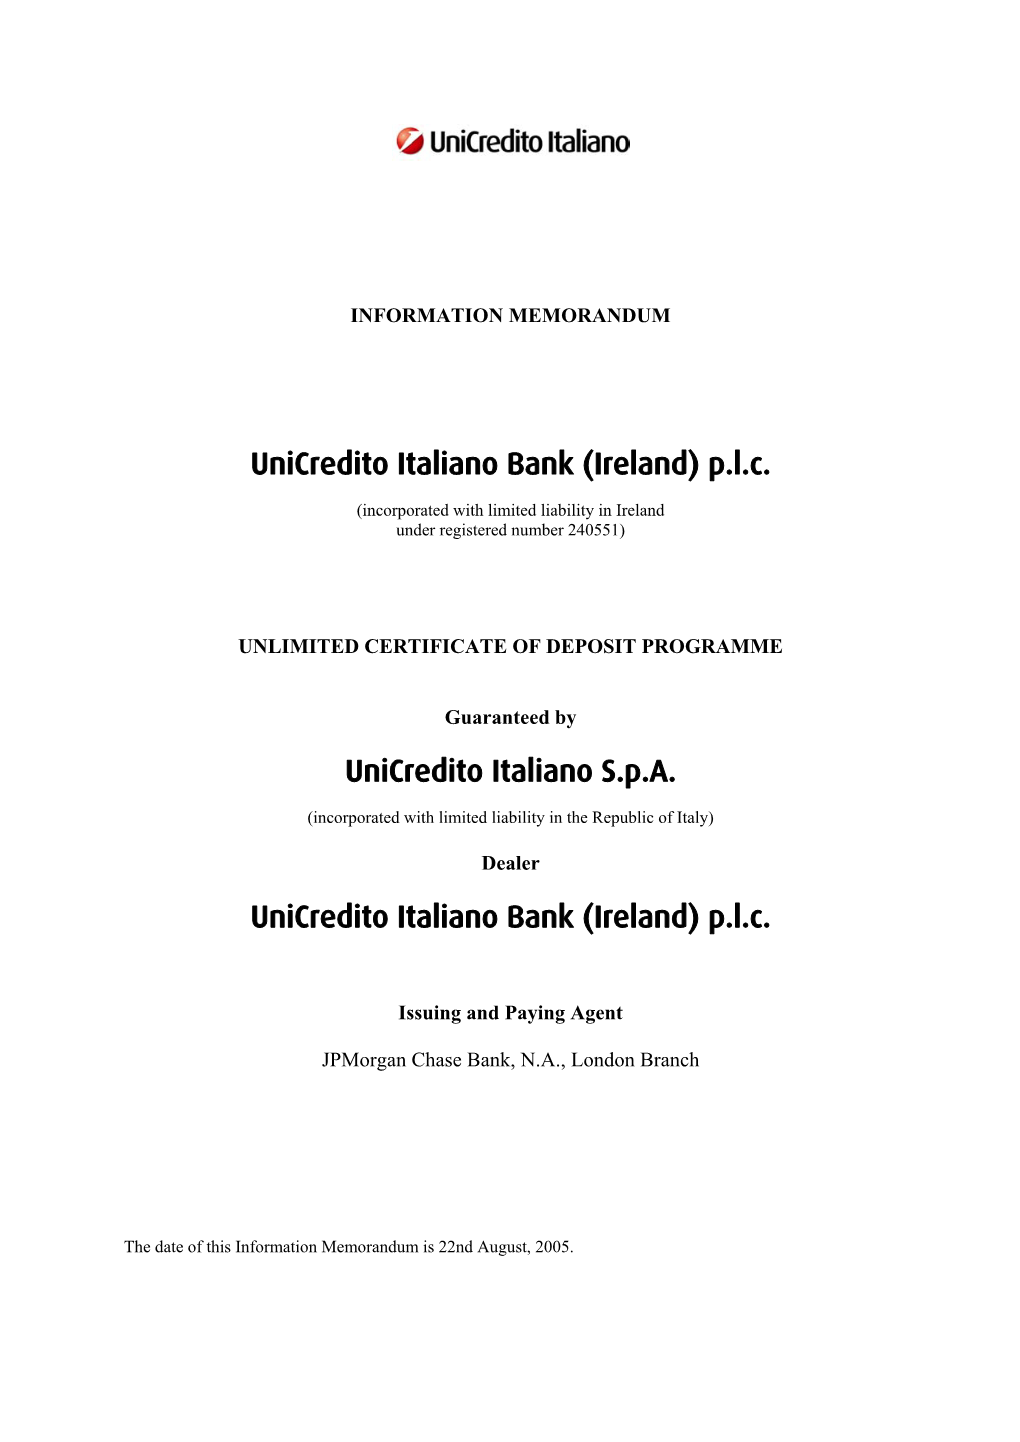 Unicredito Italiano Bank (Ireland) P.L.C